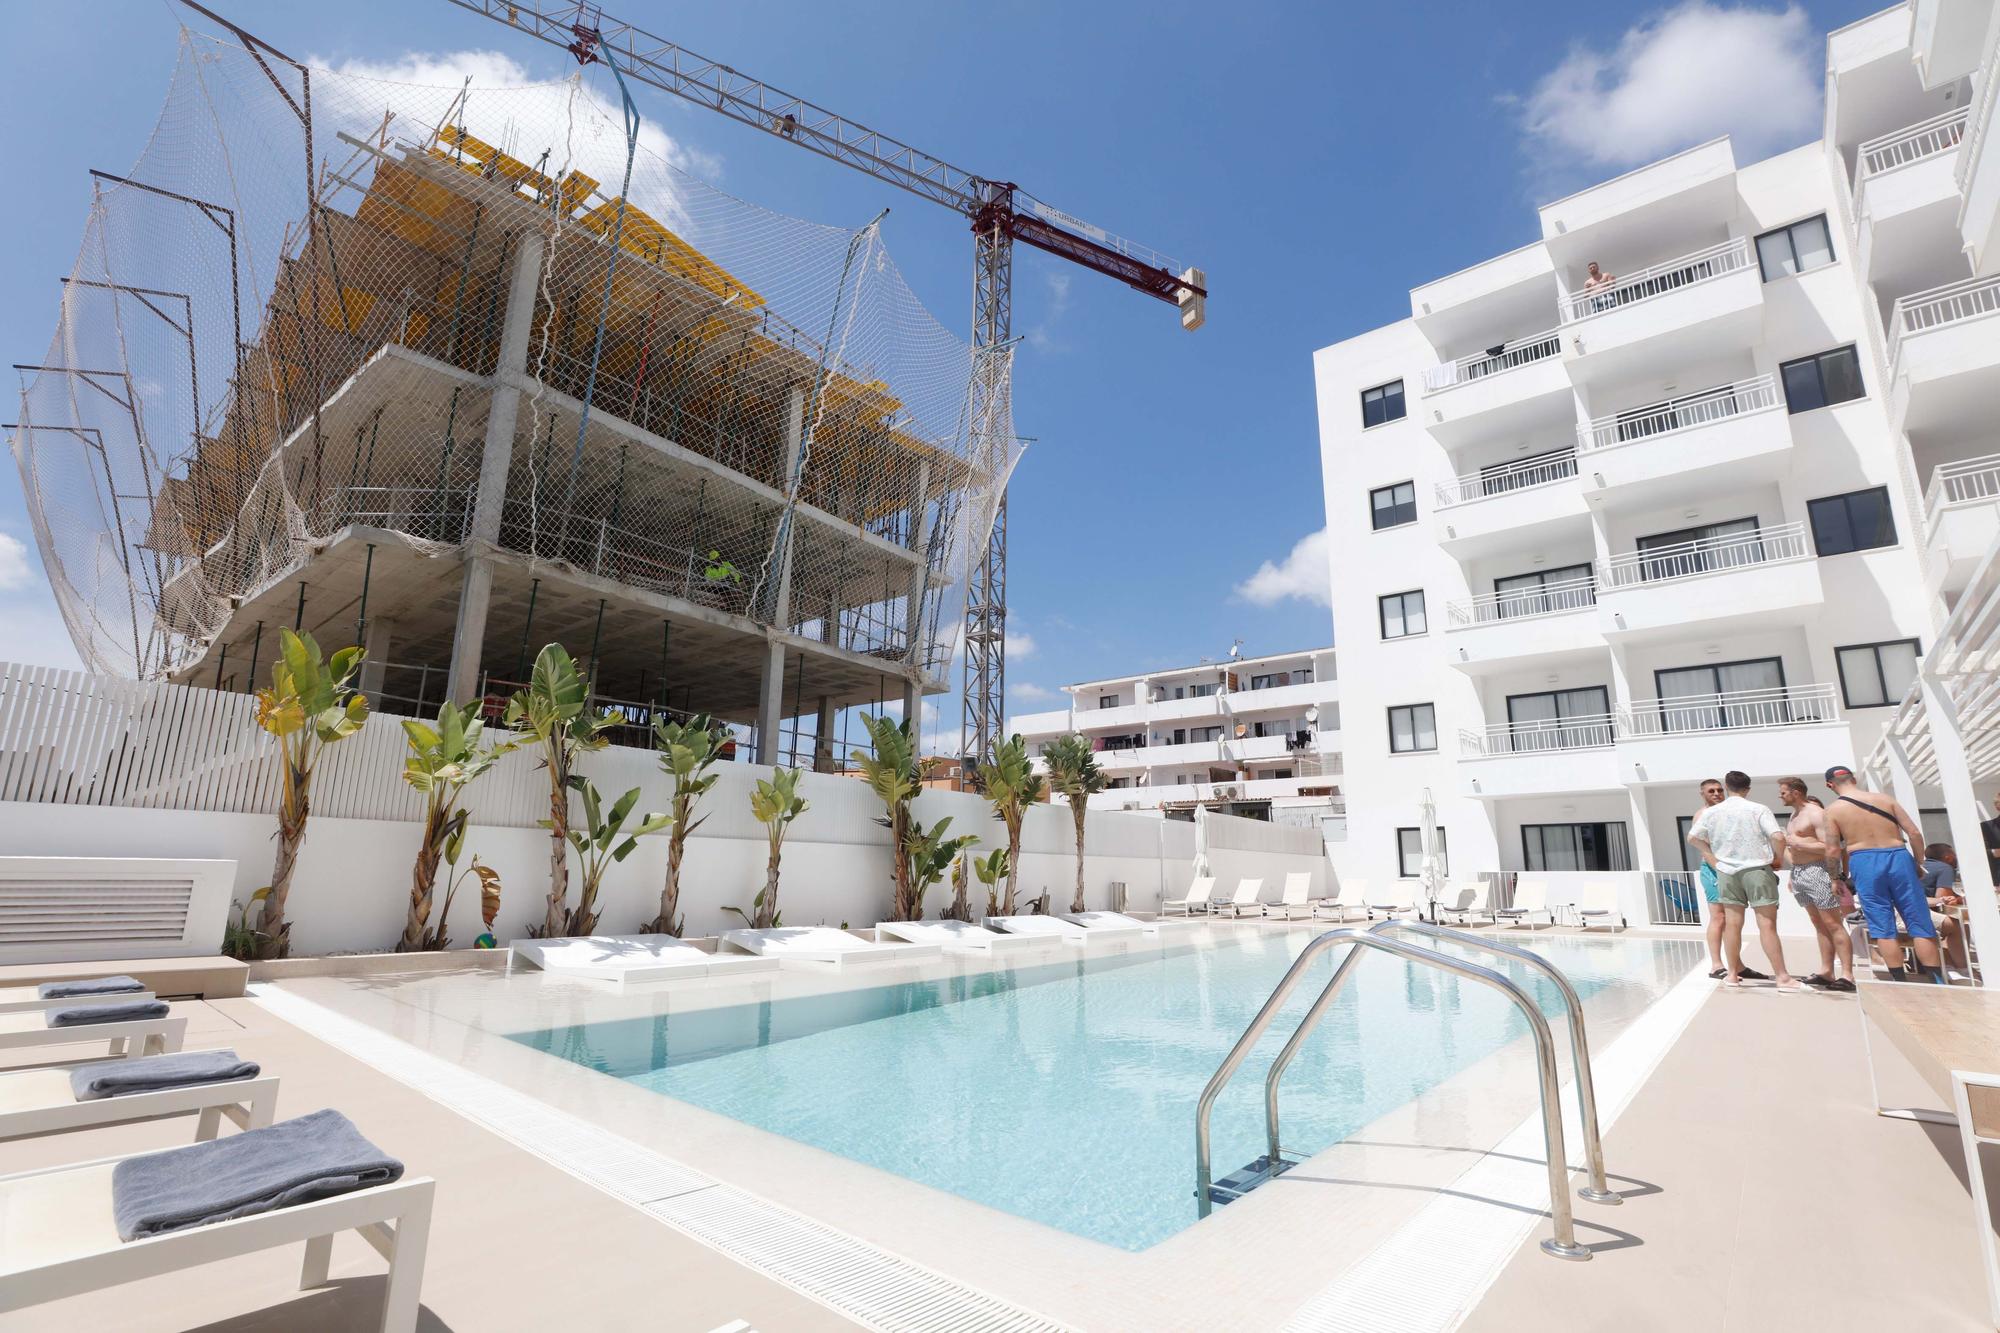 Un hotelero de Ibiza denuncia que está perdiendo clientes por las molestias de unas obras